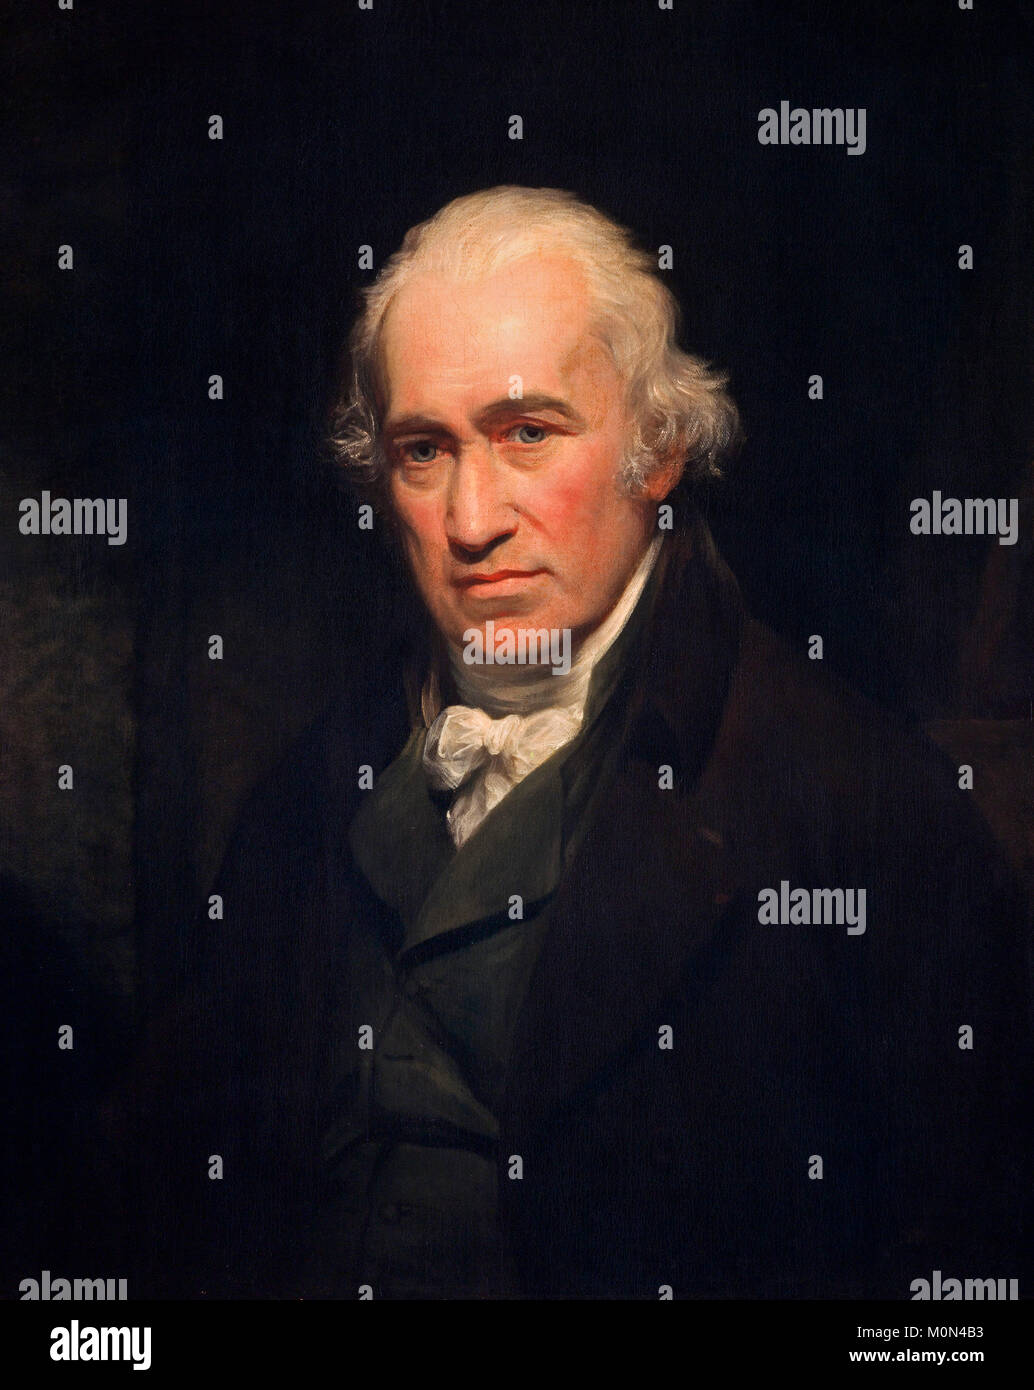 James Watt. Porträt des 18 thC Maschinenbauer und Erfinder der Kondensation Dampfmaschine. Gemälde von John Partridge nach Sir William Beechey, Öl auf Leinwand, 1806 Stockfoto